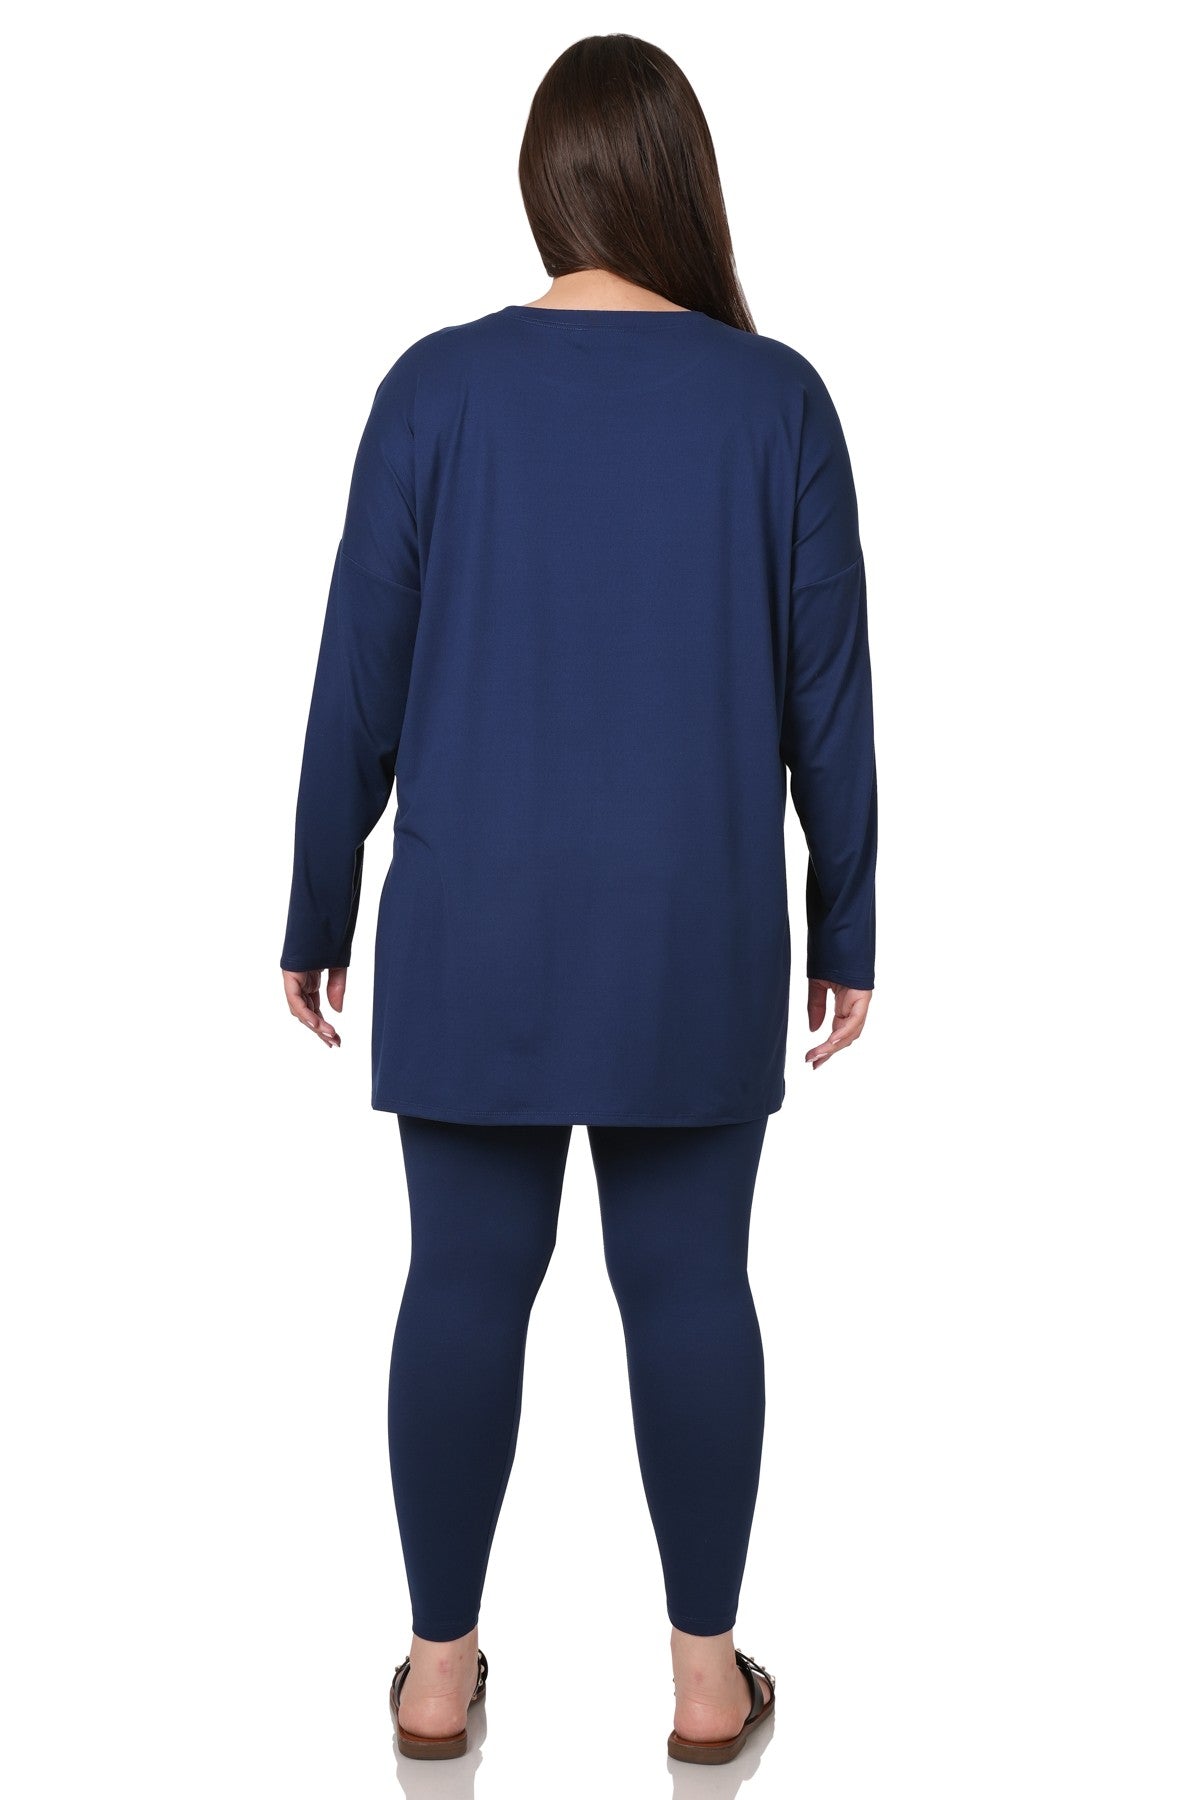 Zenana Clothing Brushed Microfiber Leggings – Blueberi Boutique